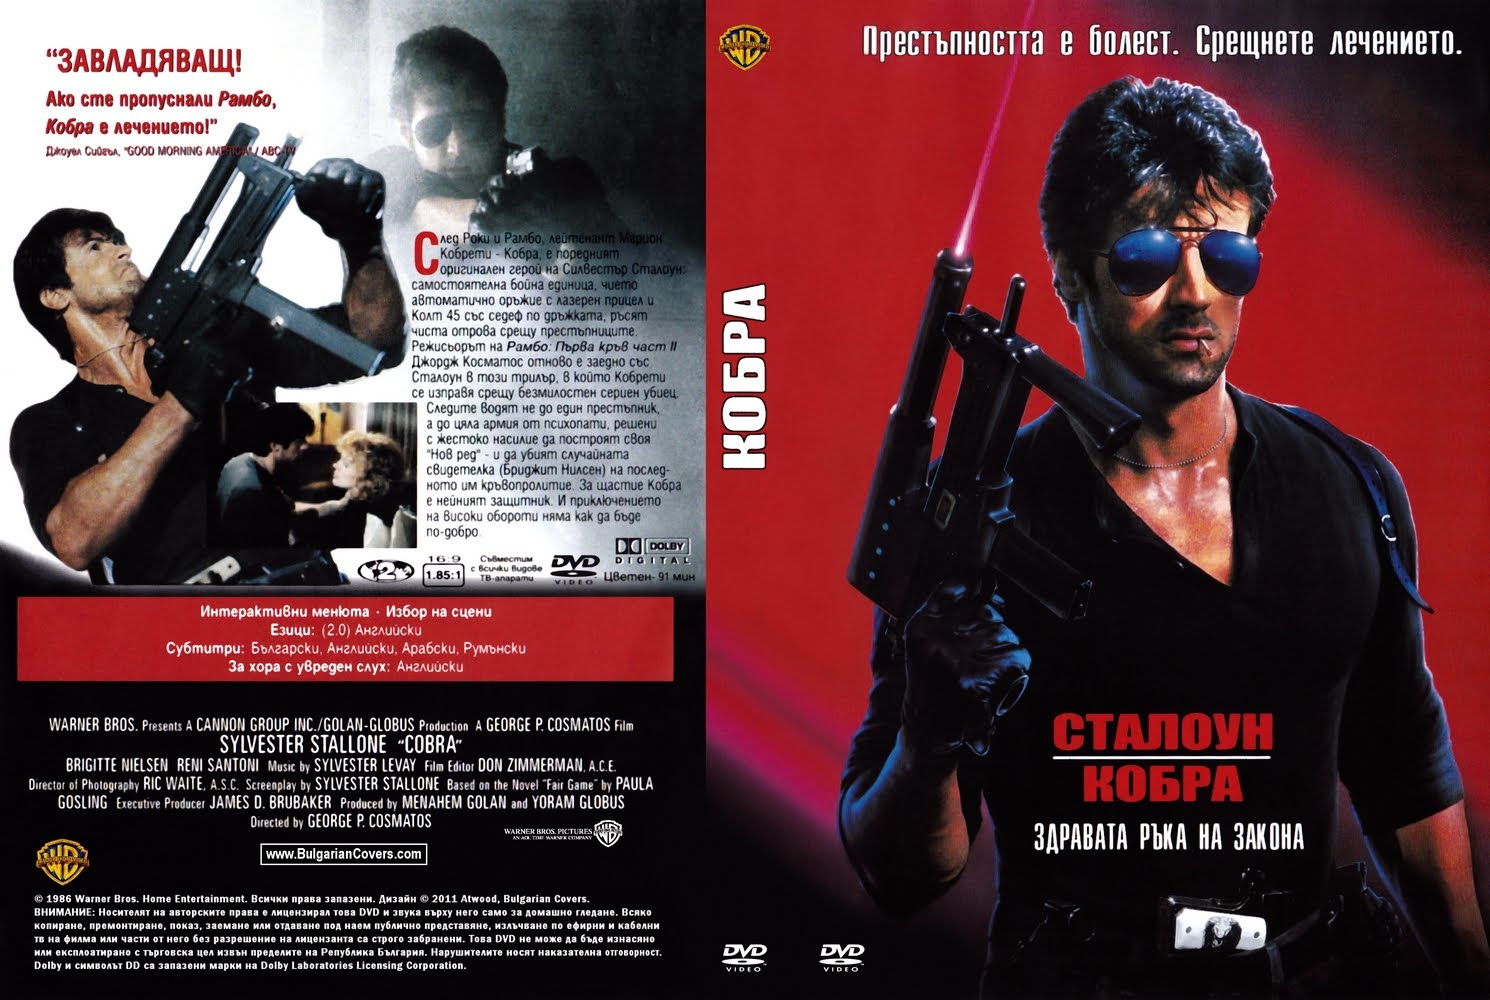 Cobra перевод. Обложка DVD Cover Кобра. 1986. Cobra 1986 DVD Cover. Кобра (Cobra) 1986 обложка DVD. DVD обложка Кобра-1986.